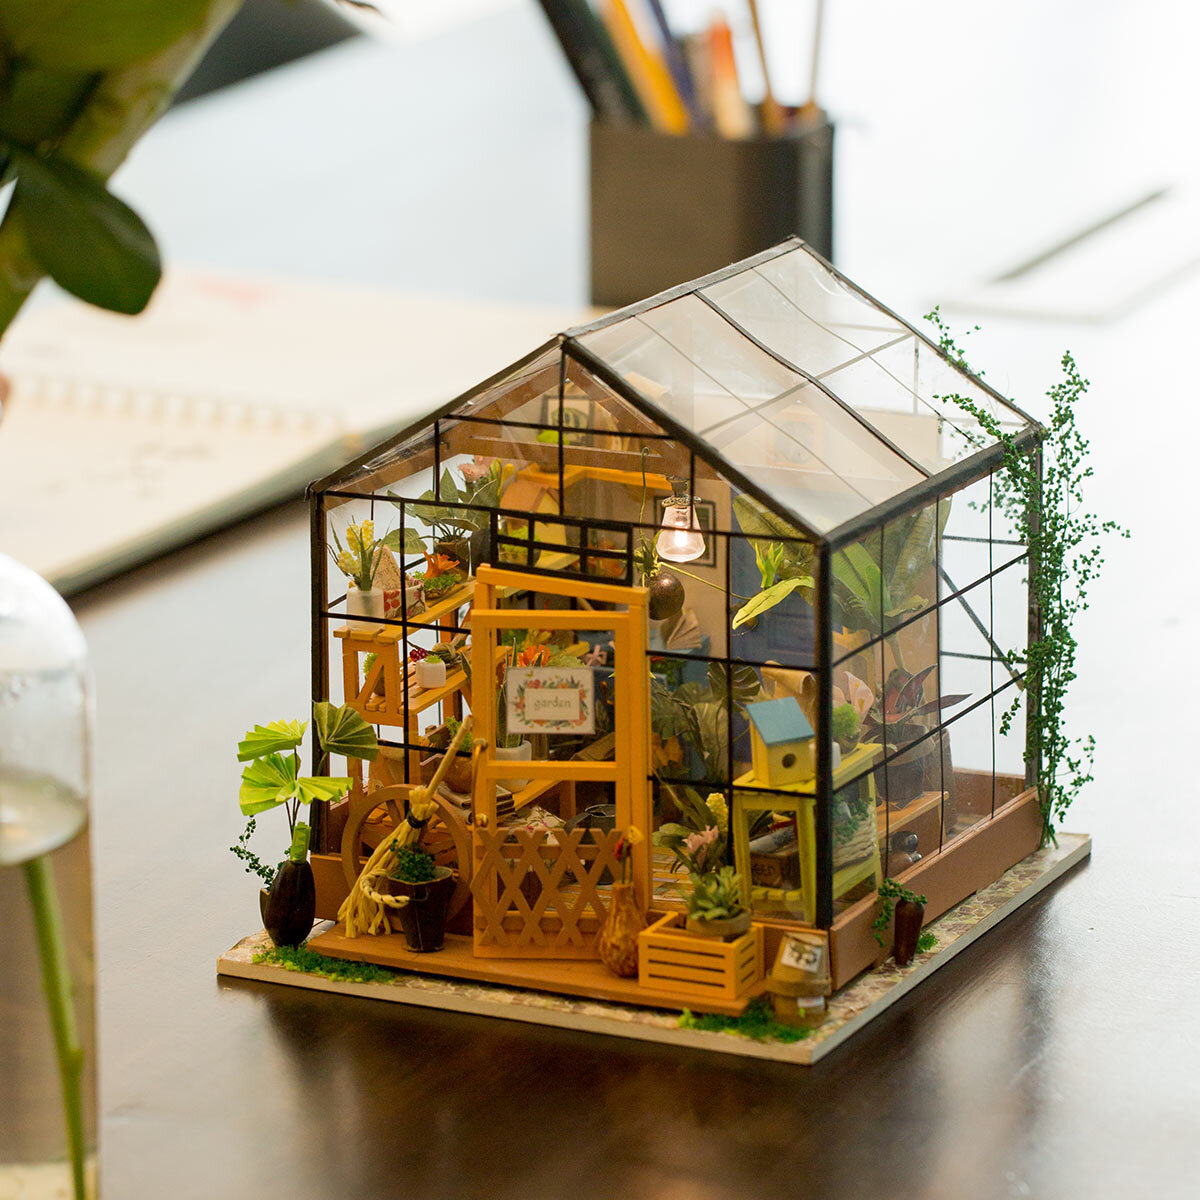 Rolife DIY Miniature House - Flavory Café DG162